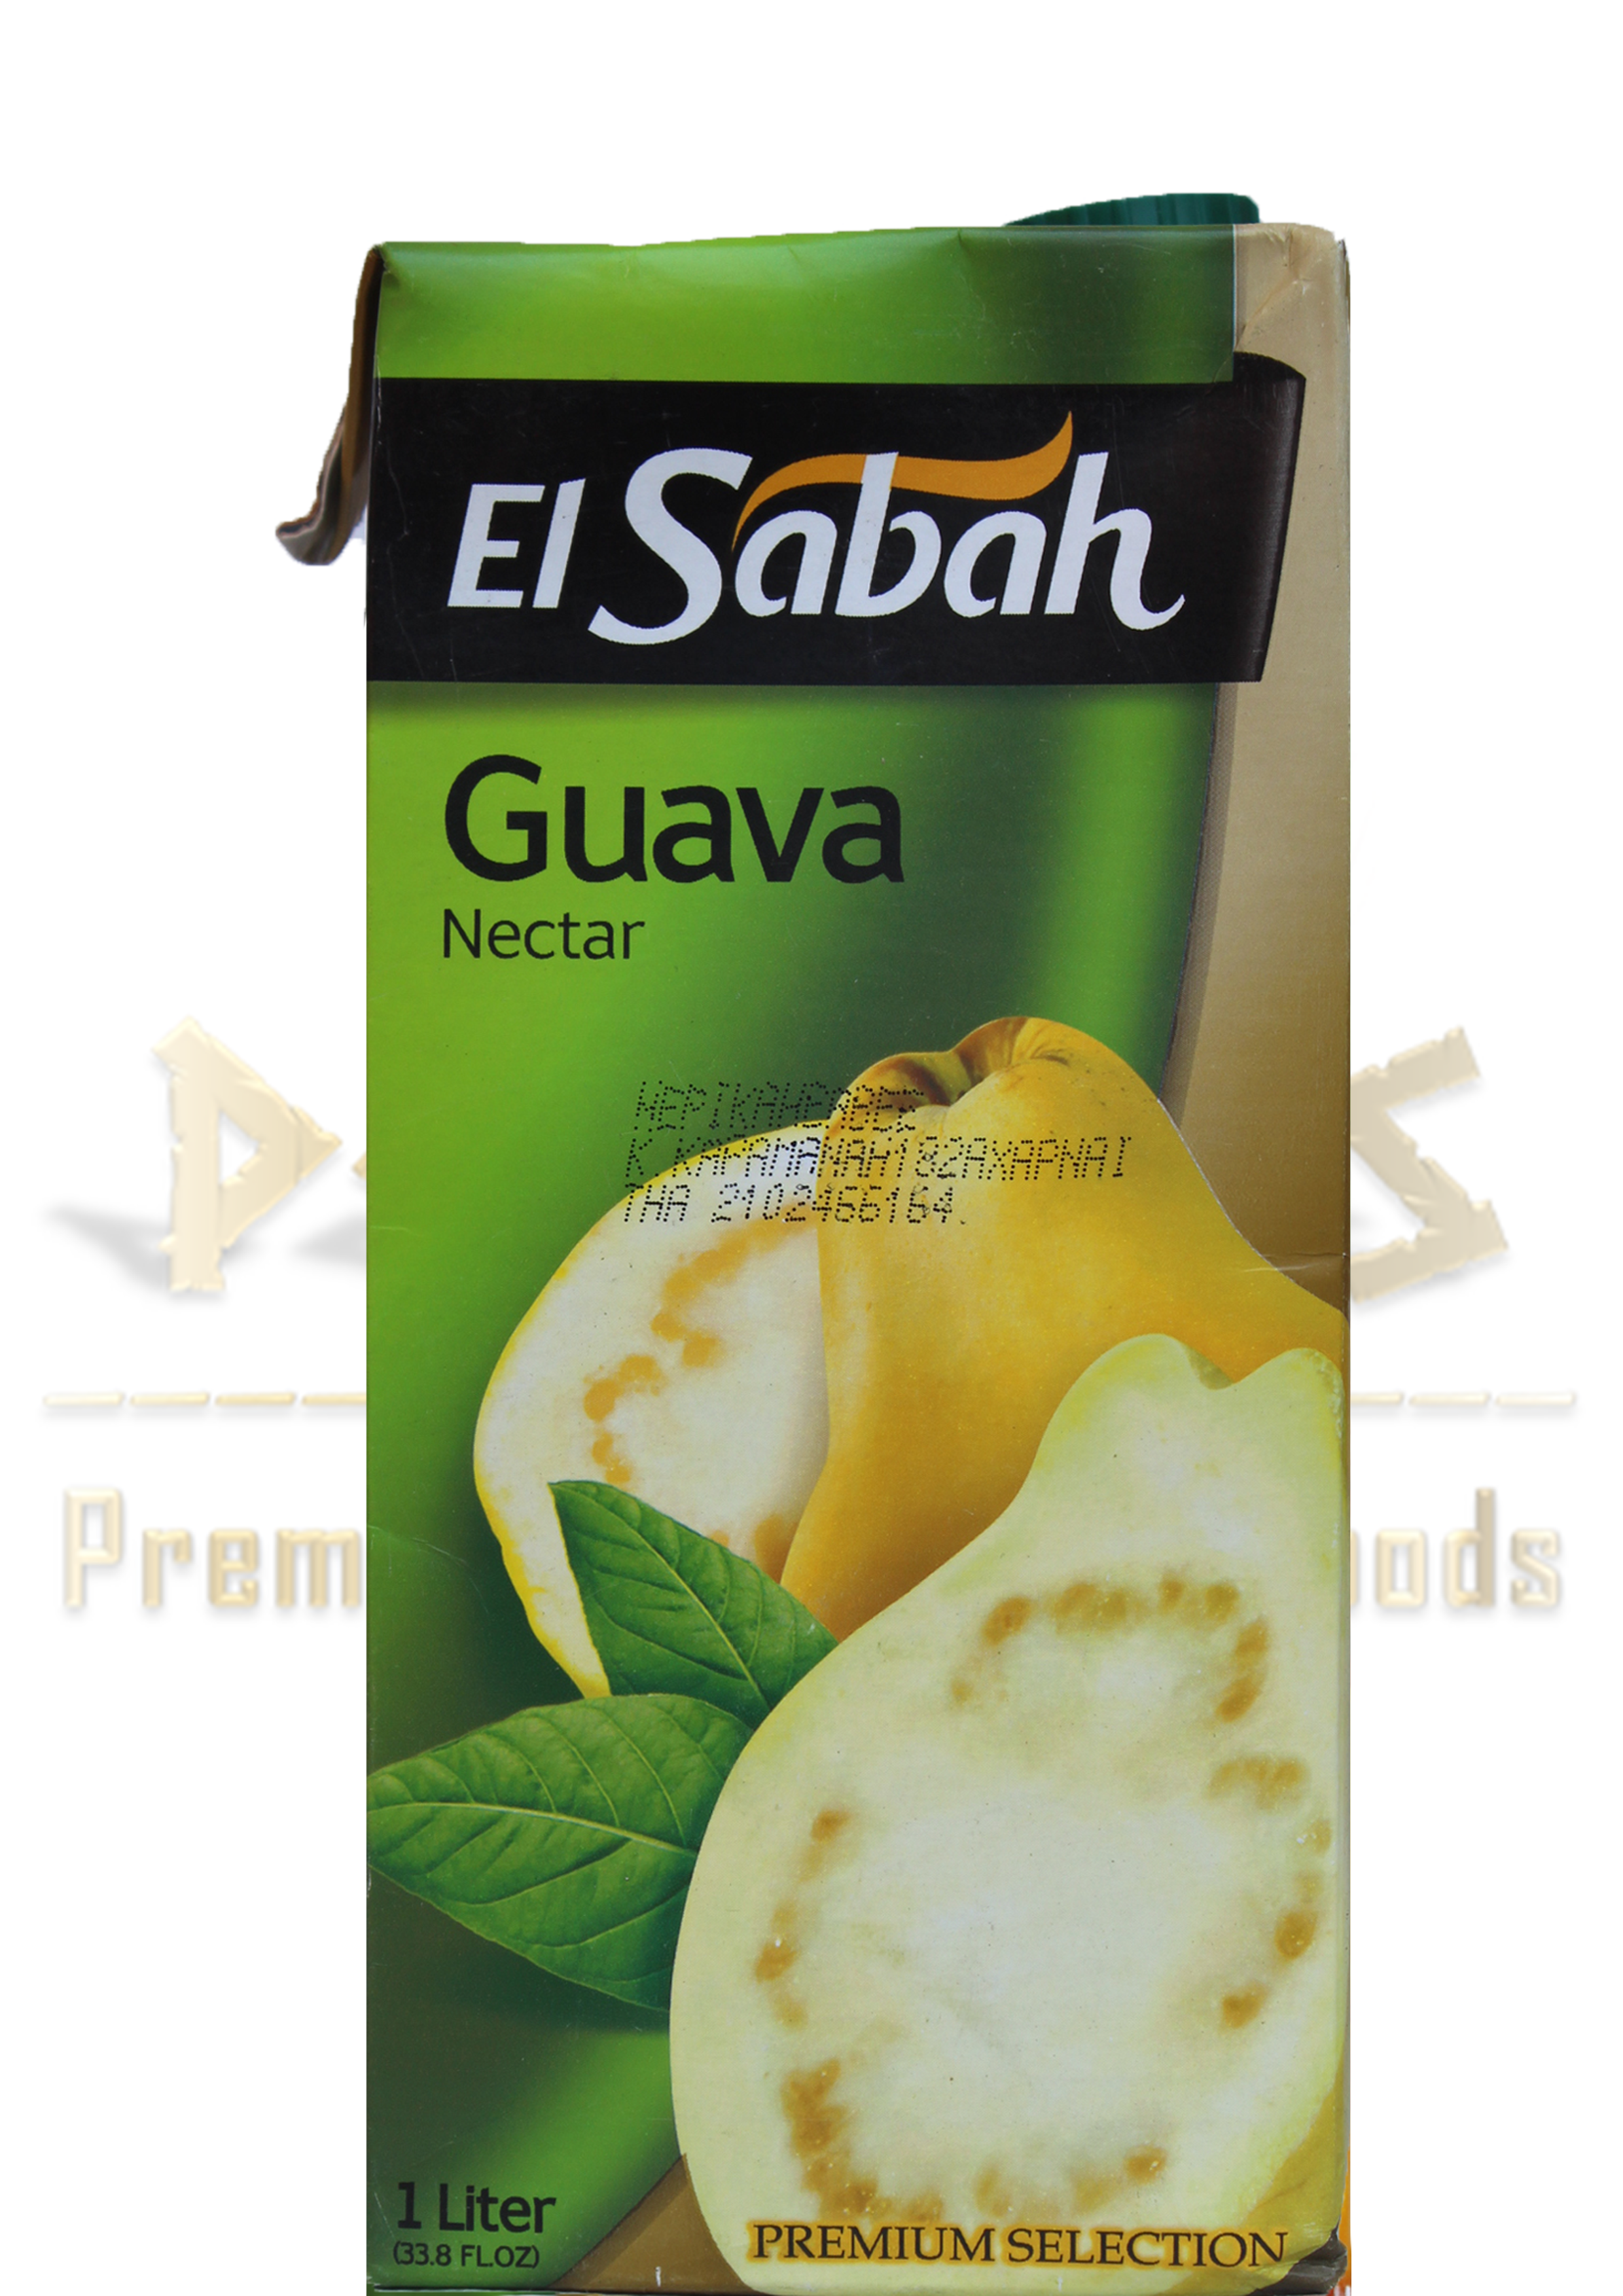 guava nectar